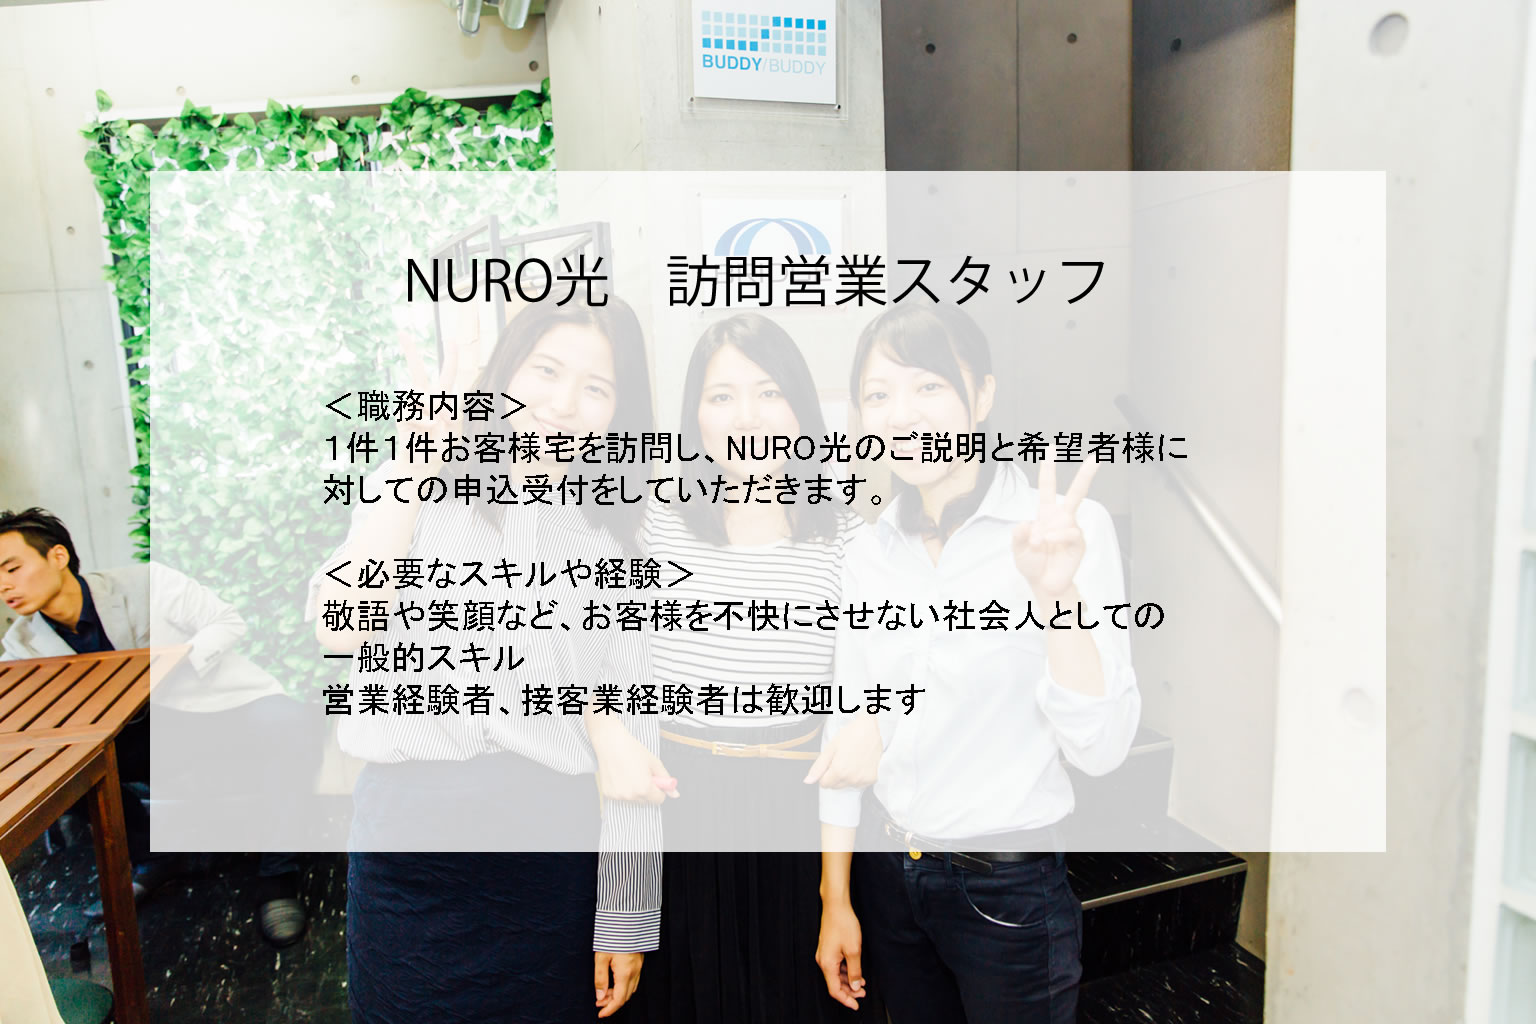 NURO光訪問営業スタッフの募集